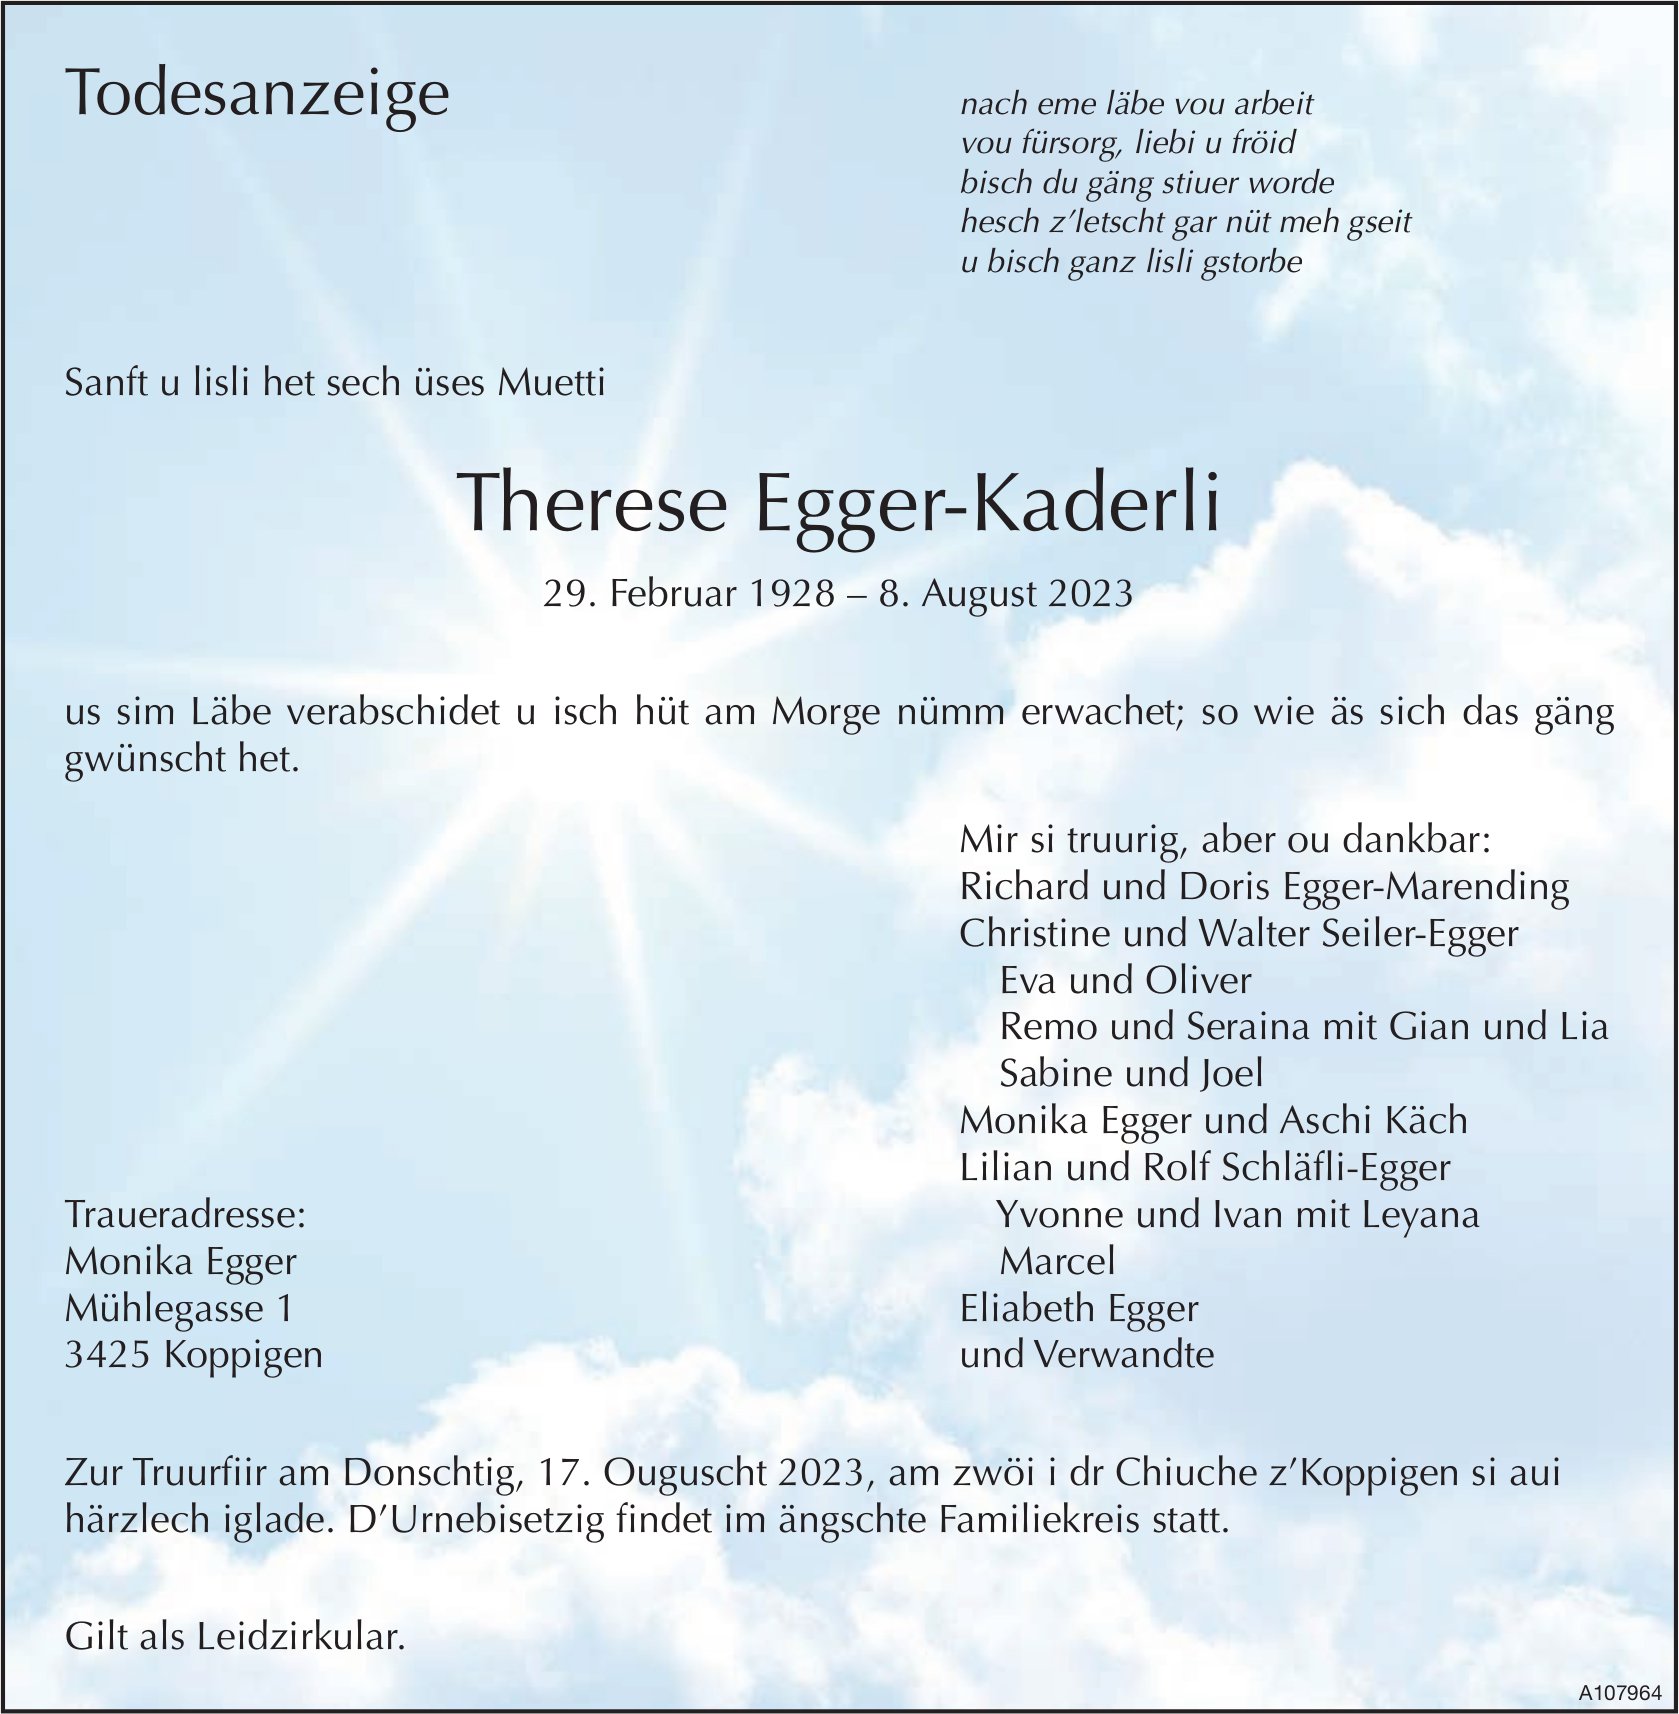 Therese Egger-Kaderli, August 2023 / TA